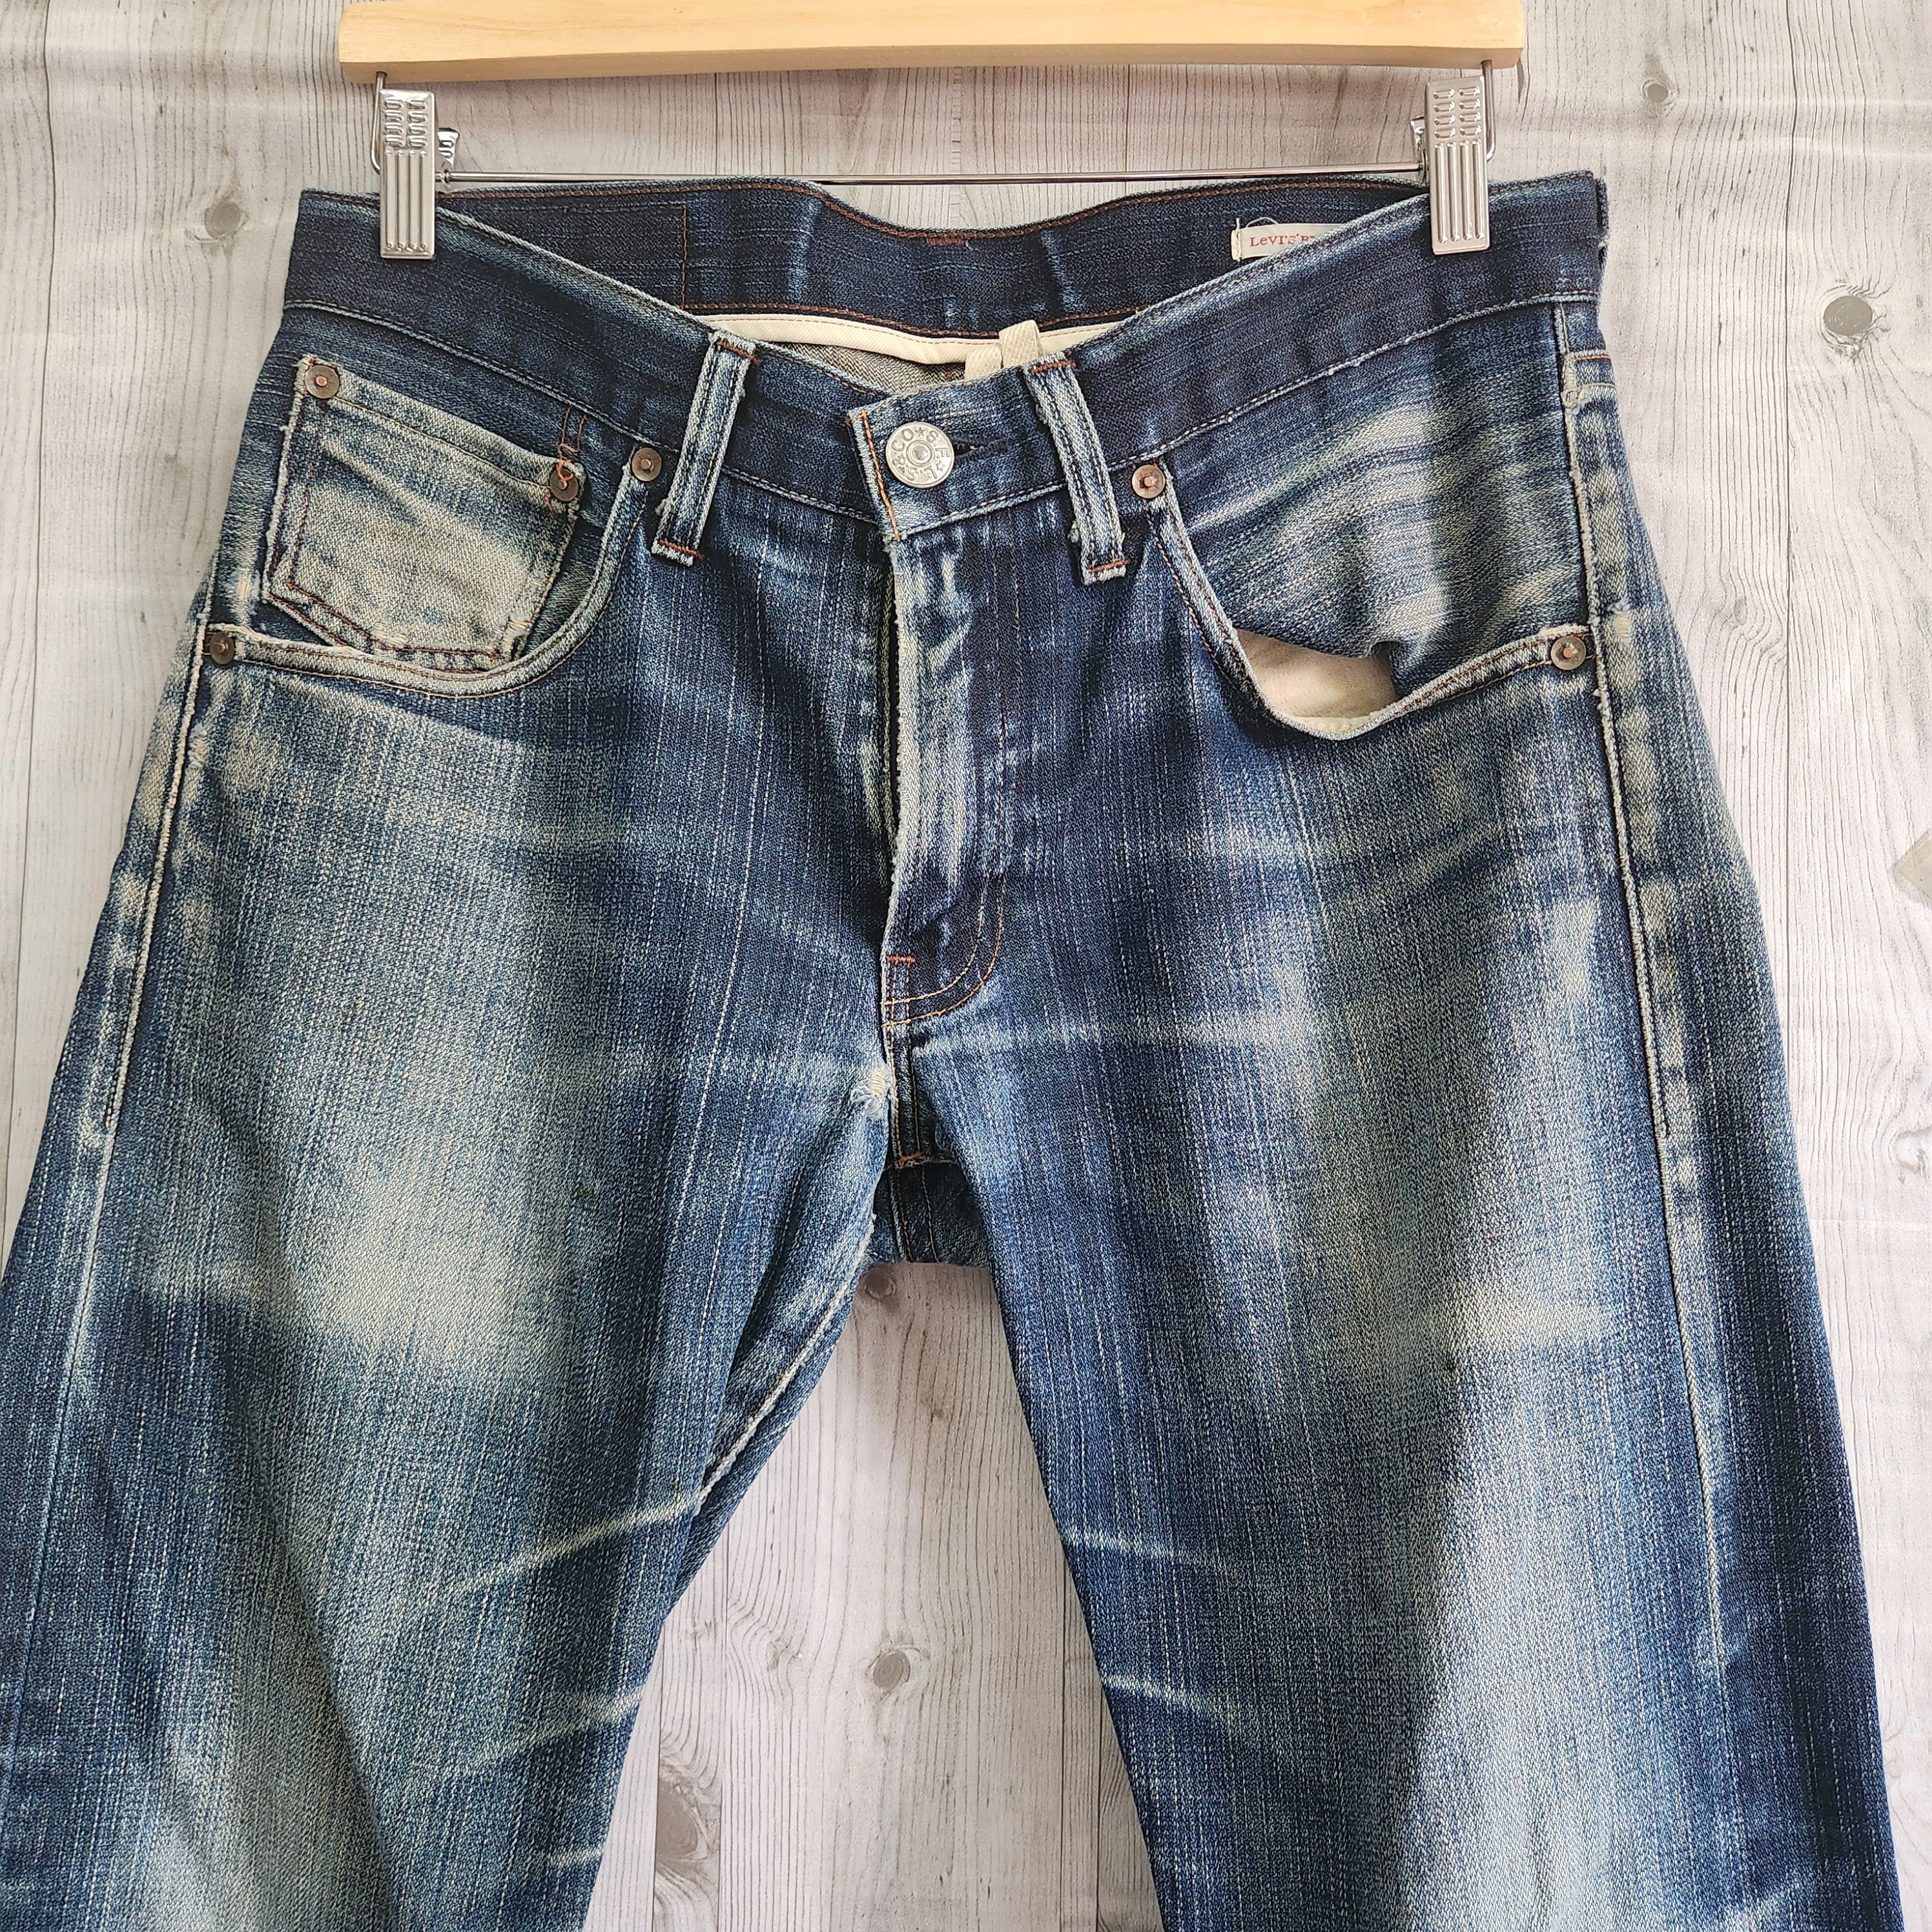 Levis 505 Premium Distressed Denim Jeans - 20